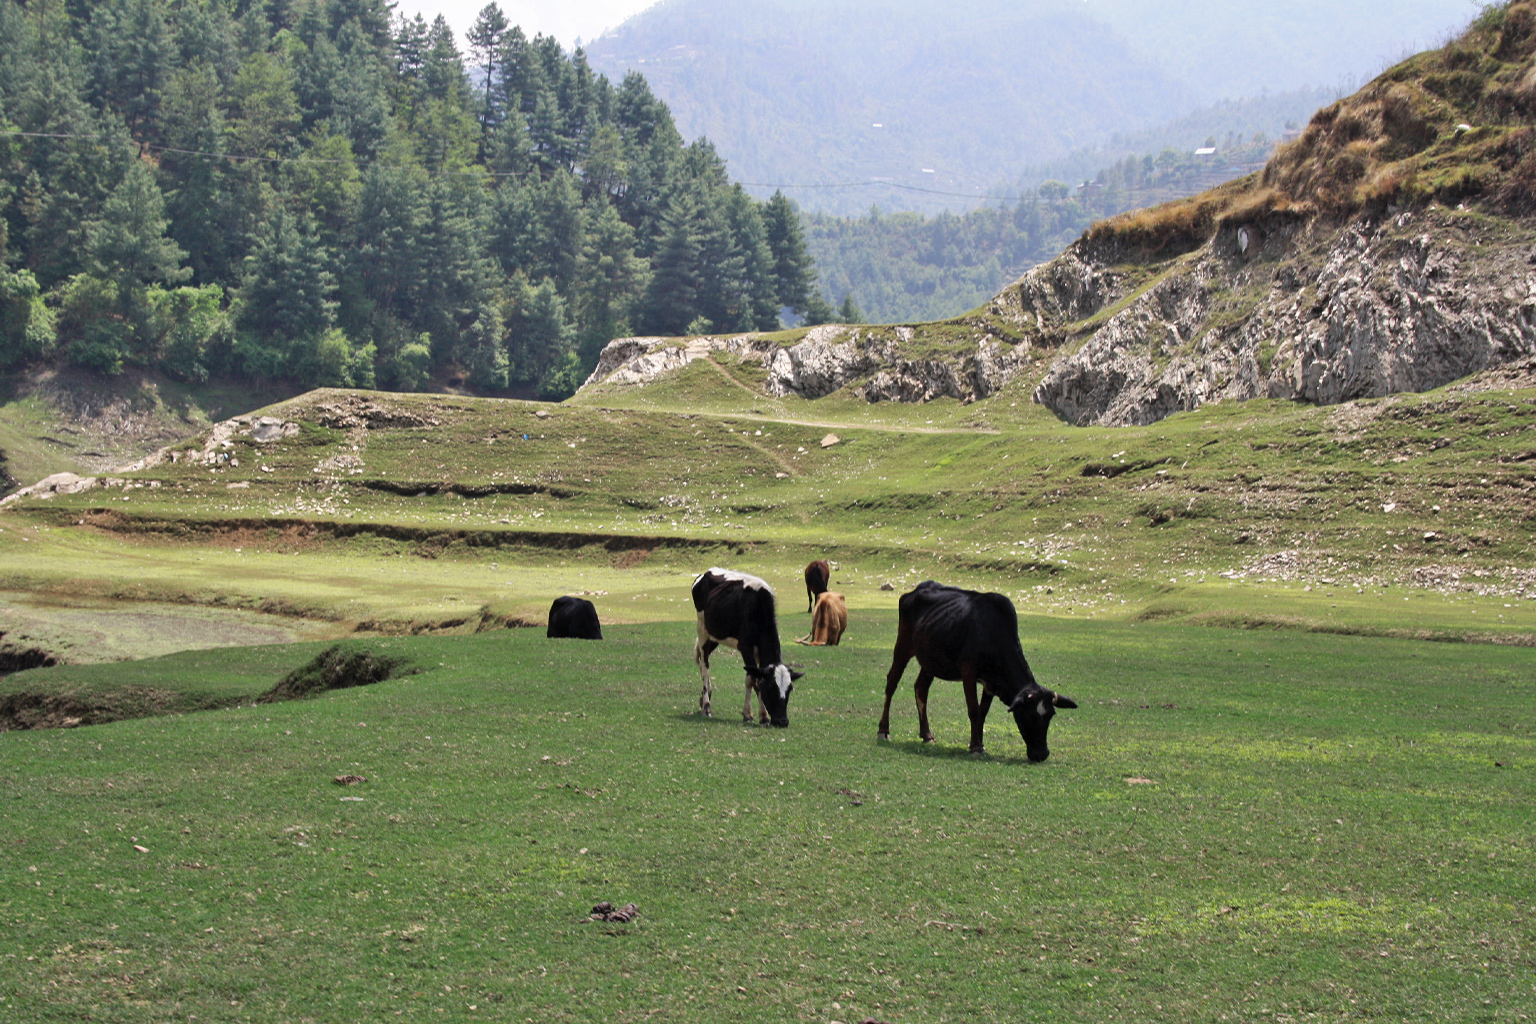 Cows grazing in open field.